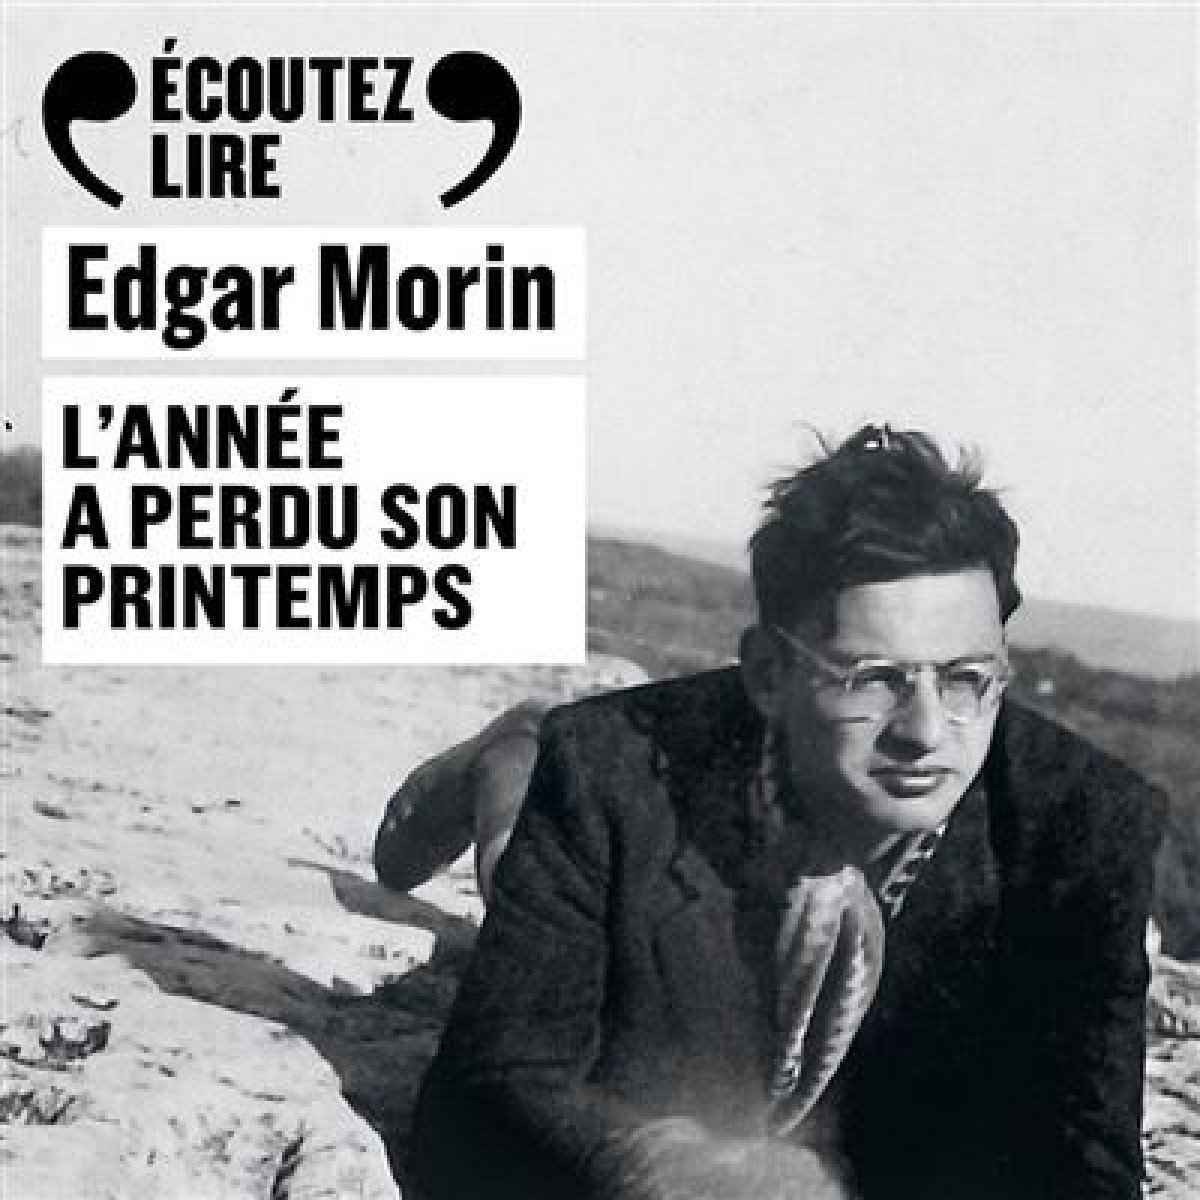 Filósofo francês Edgar Morin publica romance sobre a juventude aos 102 anos